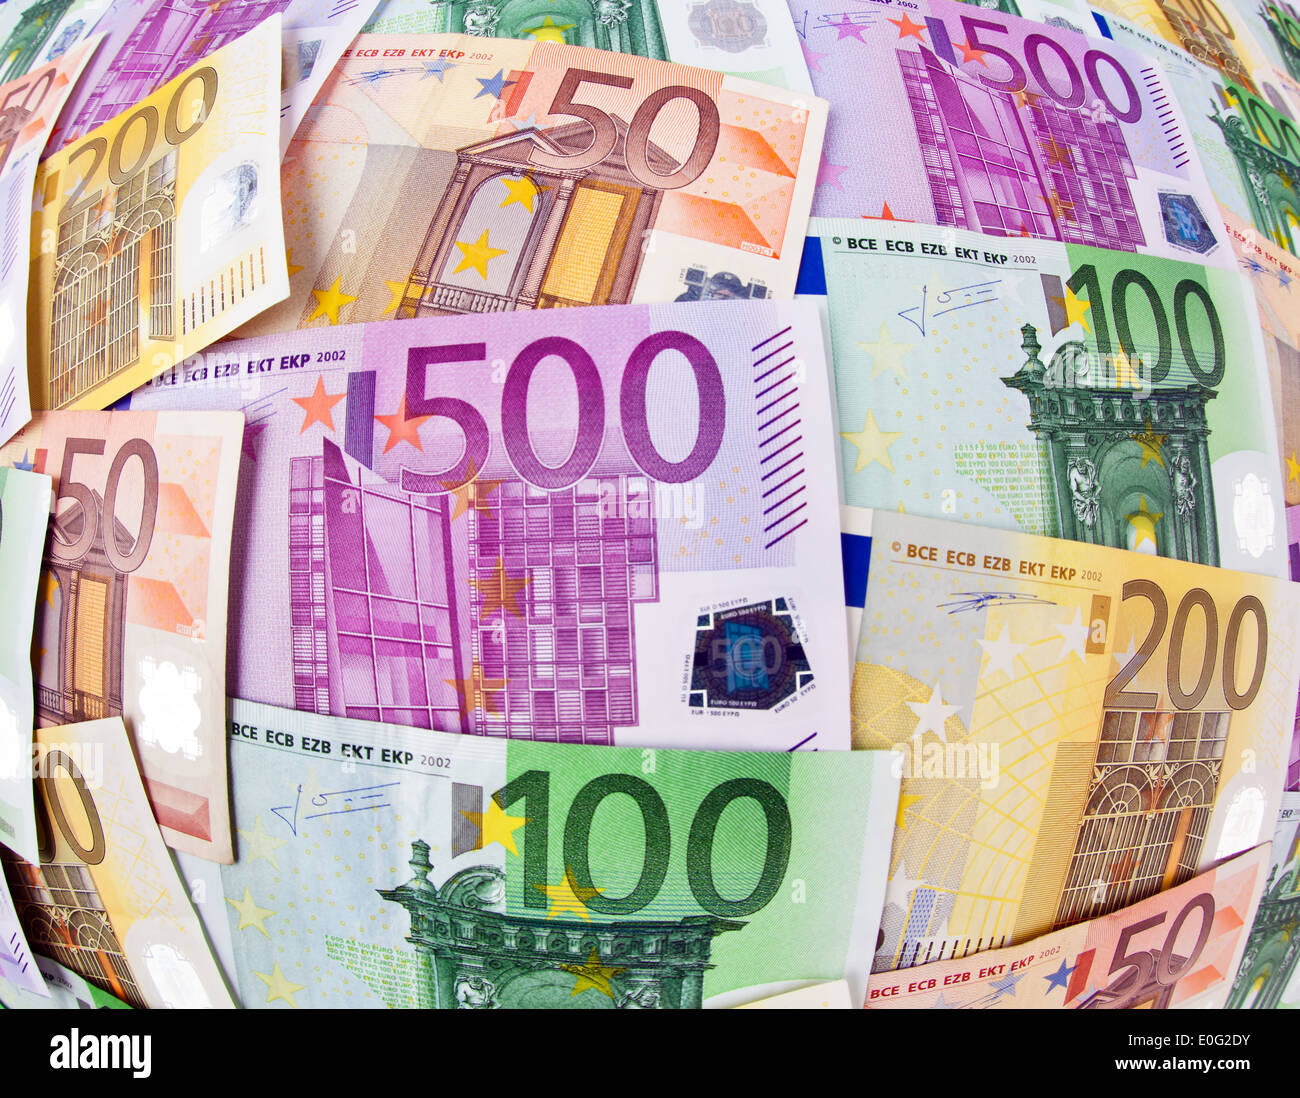 Beaucoup d'euros de billets de banque de l'Union européenne., Viele der Europaeischen Geldscheine Euro Union européenne. Banque D'Images